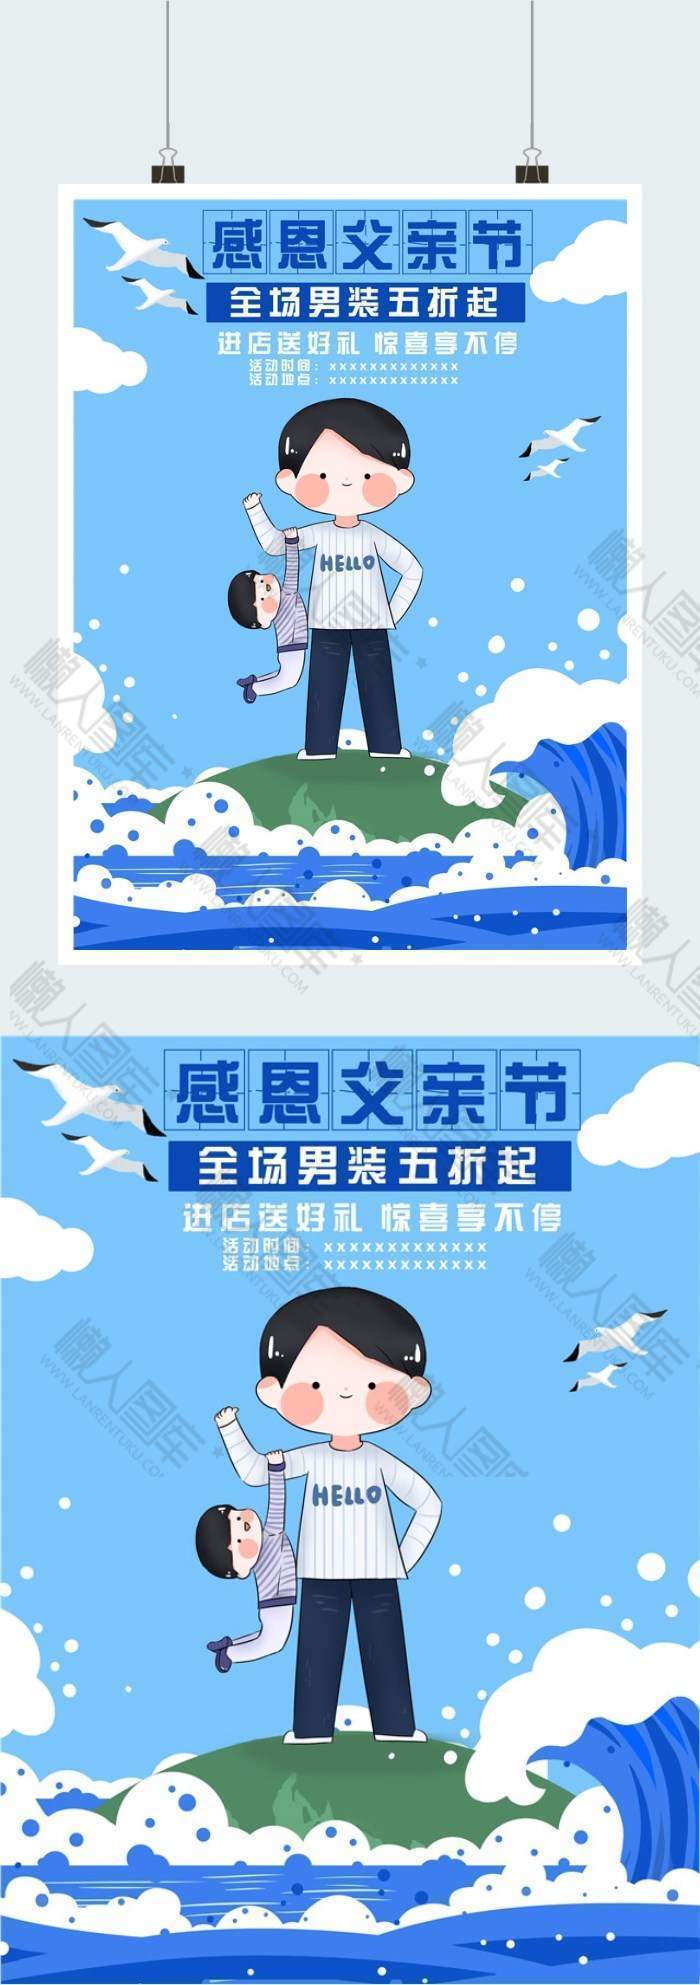 蓝色清新简约父亲节宣传印刷海报